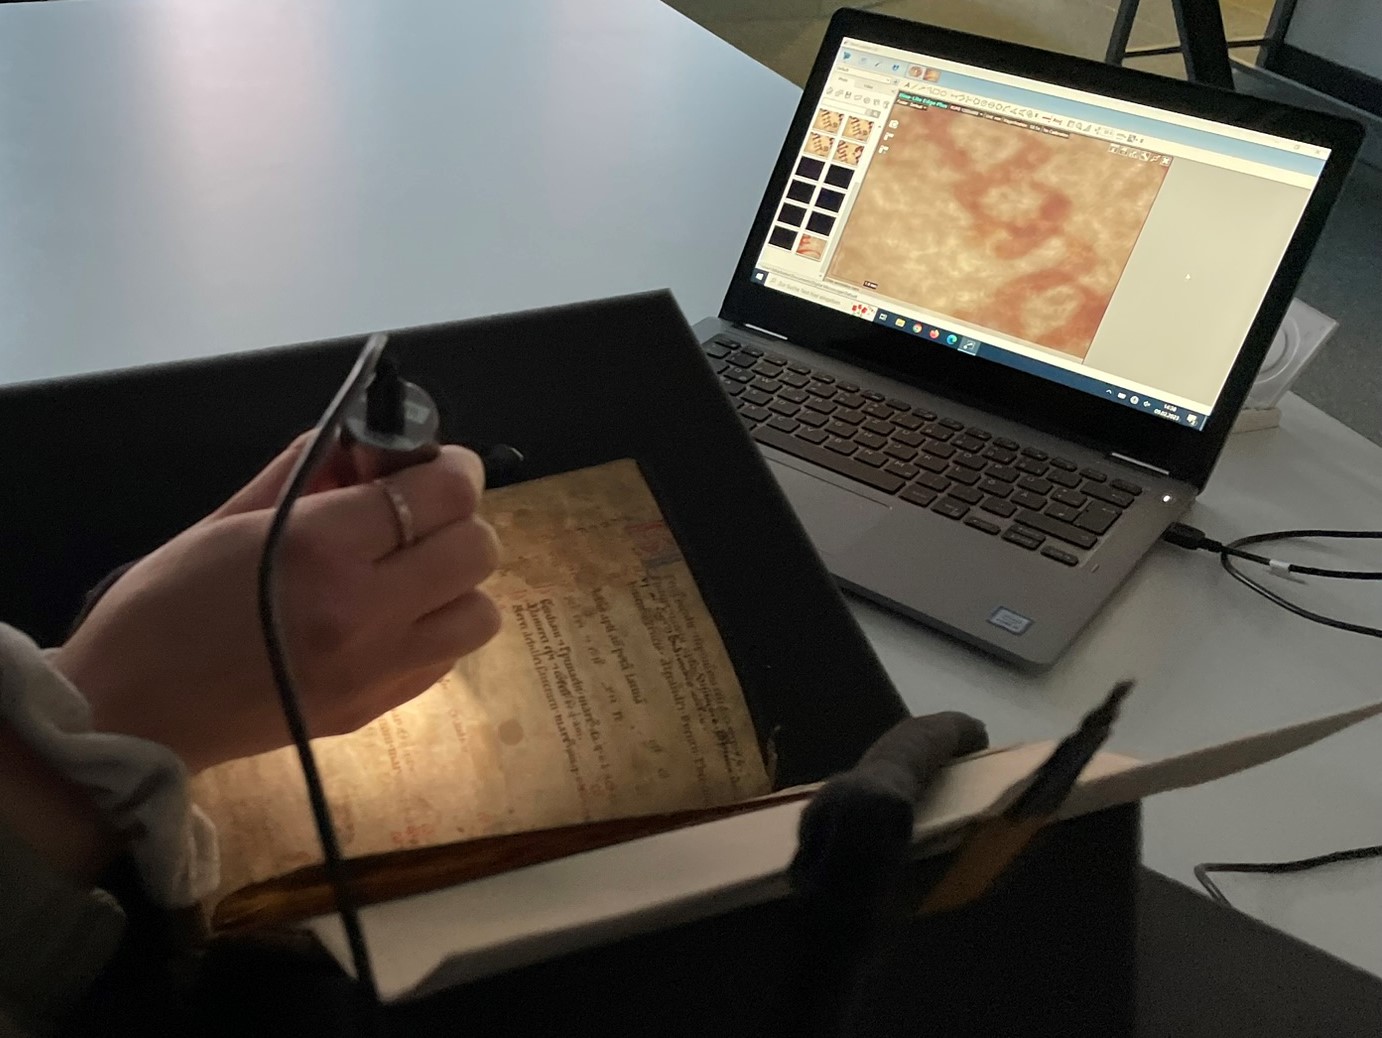 Zu sehen ist das Digitalmikroskop, das bei einem alten gedruckten Buch eingesetzt wird und auf dem Laptop im Hintergrund einen stark vergrößerten Ausschnitt zeigt.